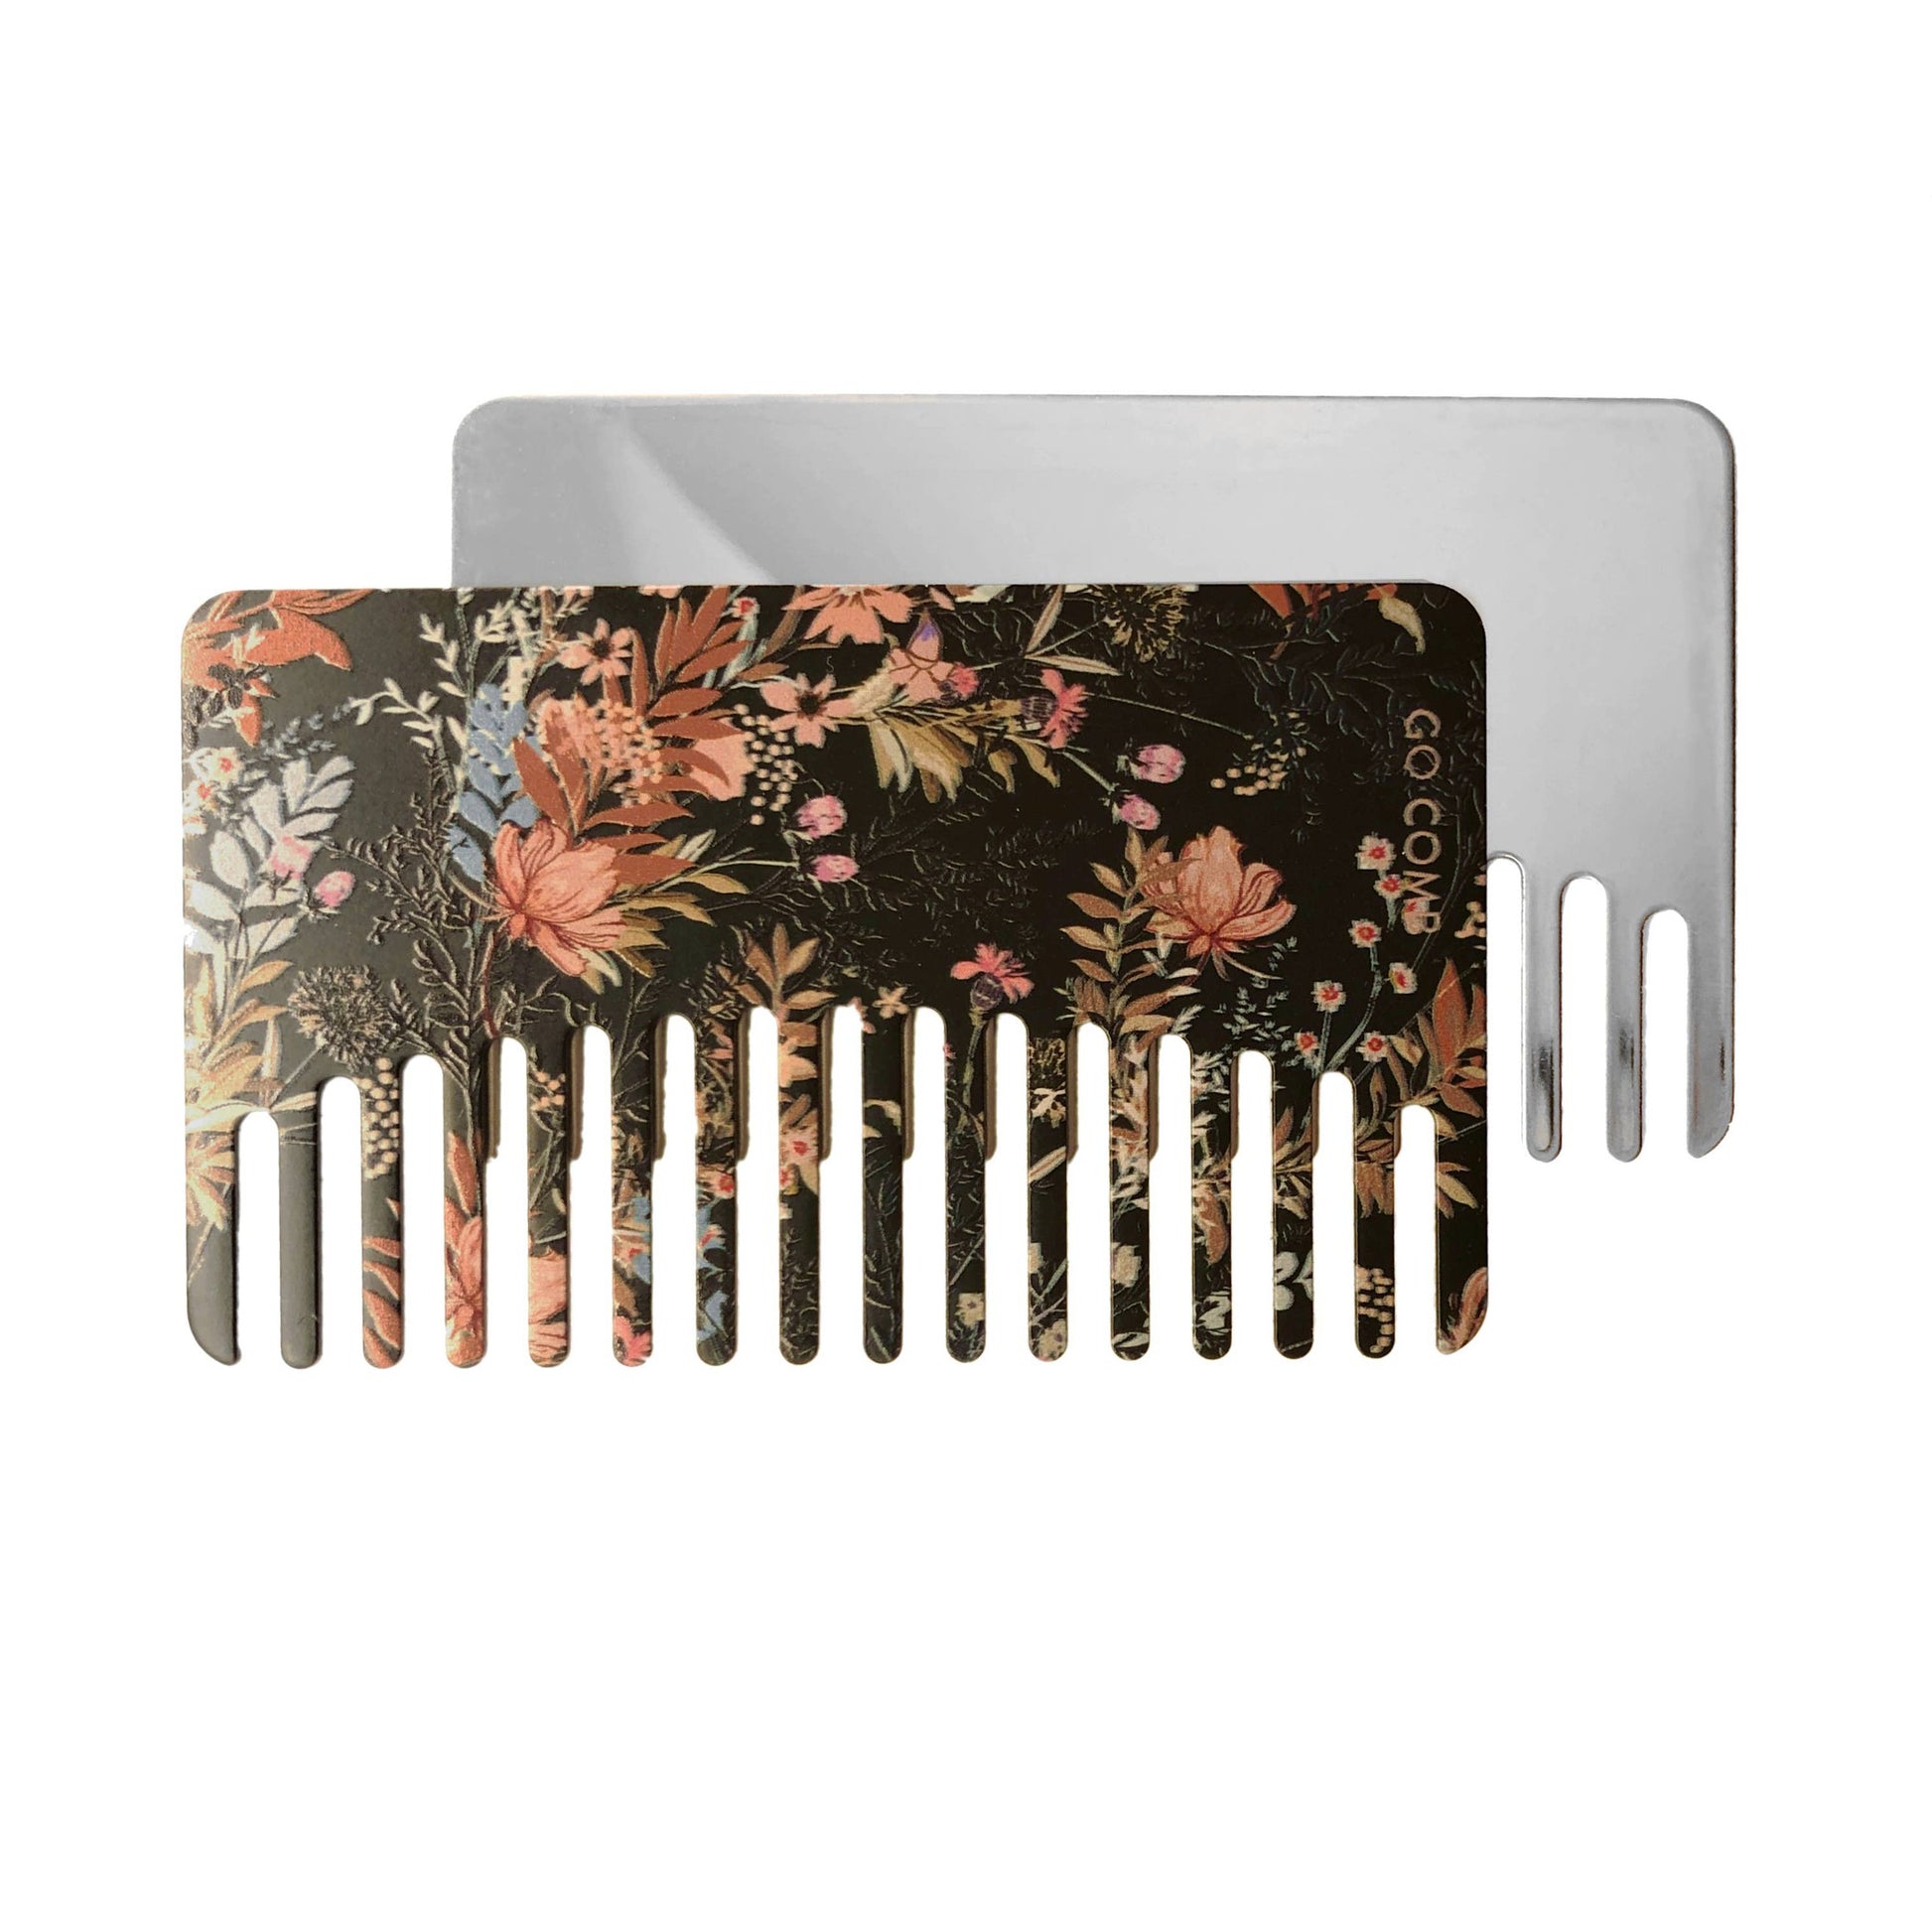 Boxed |Rustic Flora Mirror Go-Comb | Metal Wallet-Sized Comb